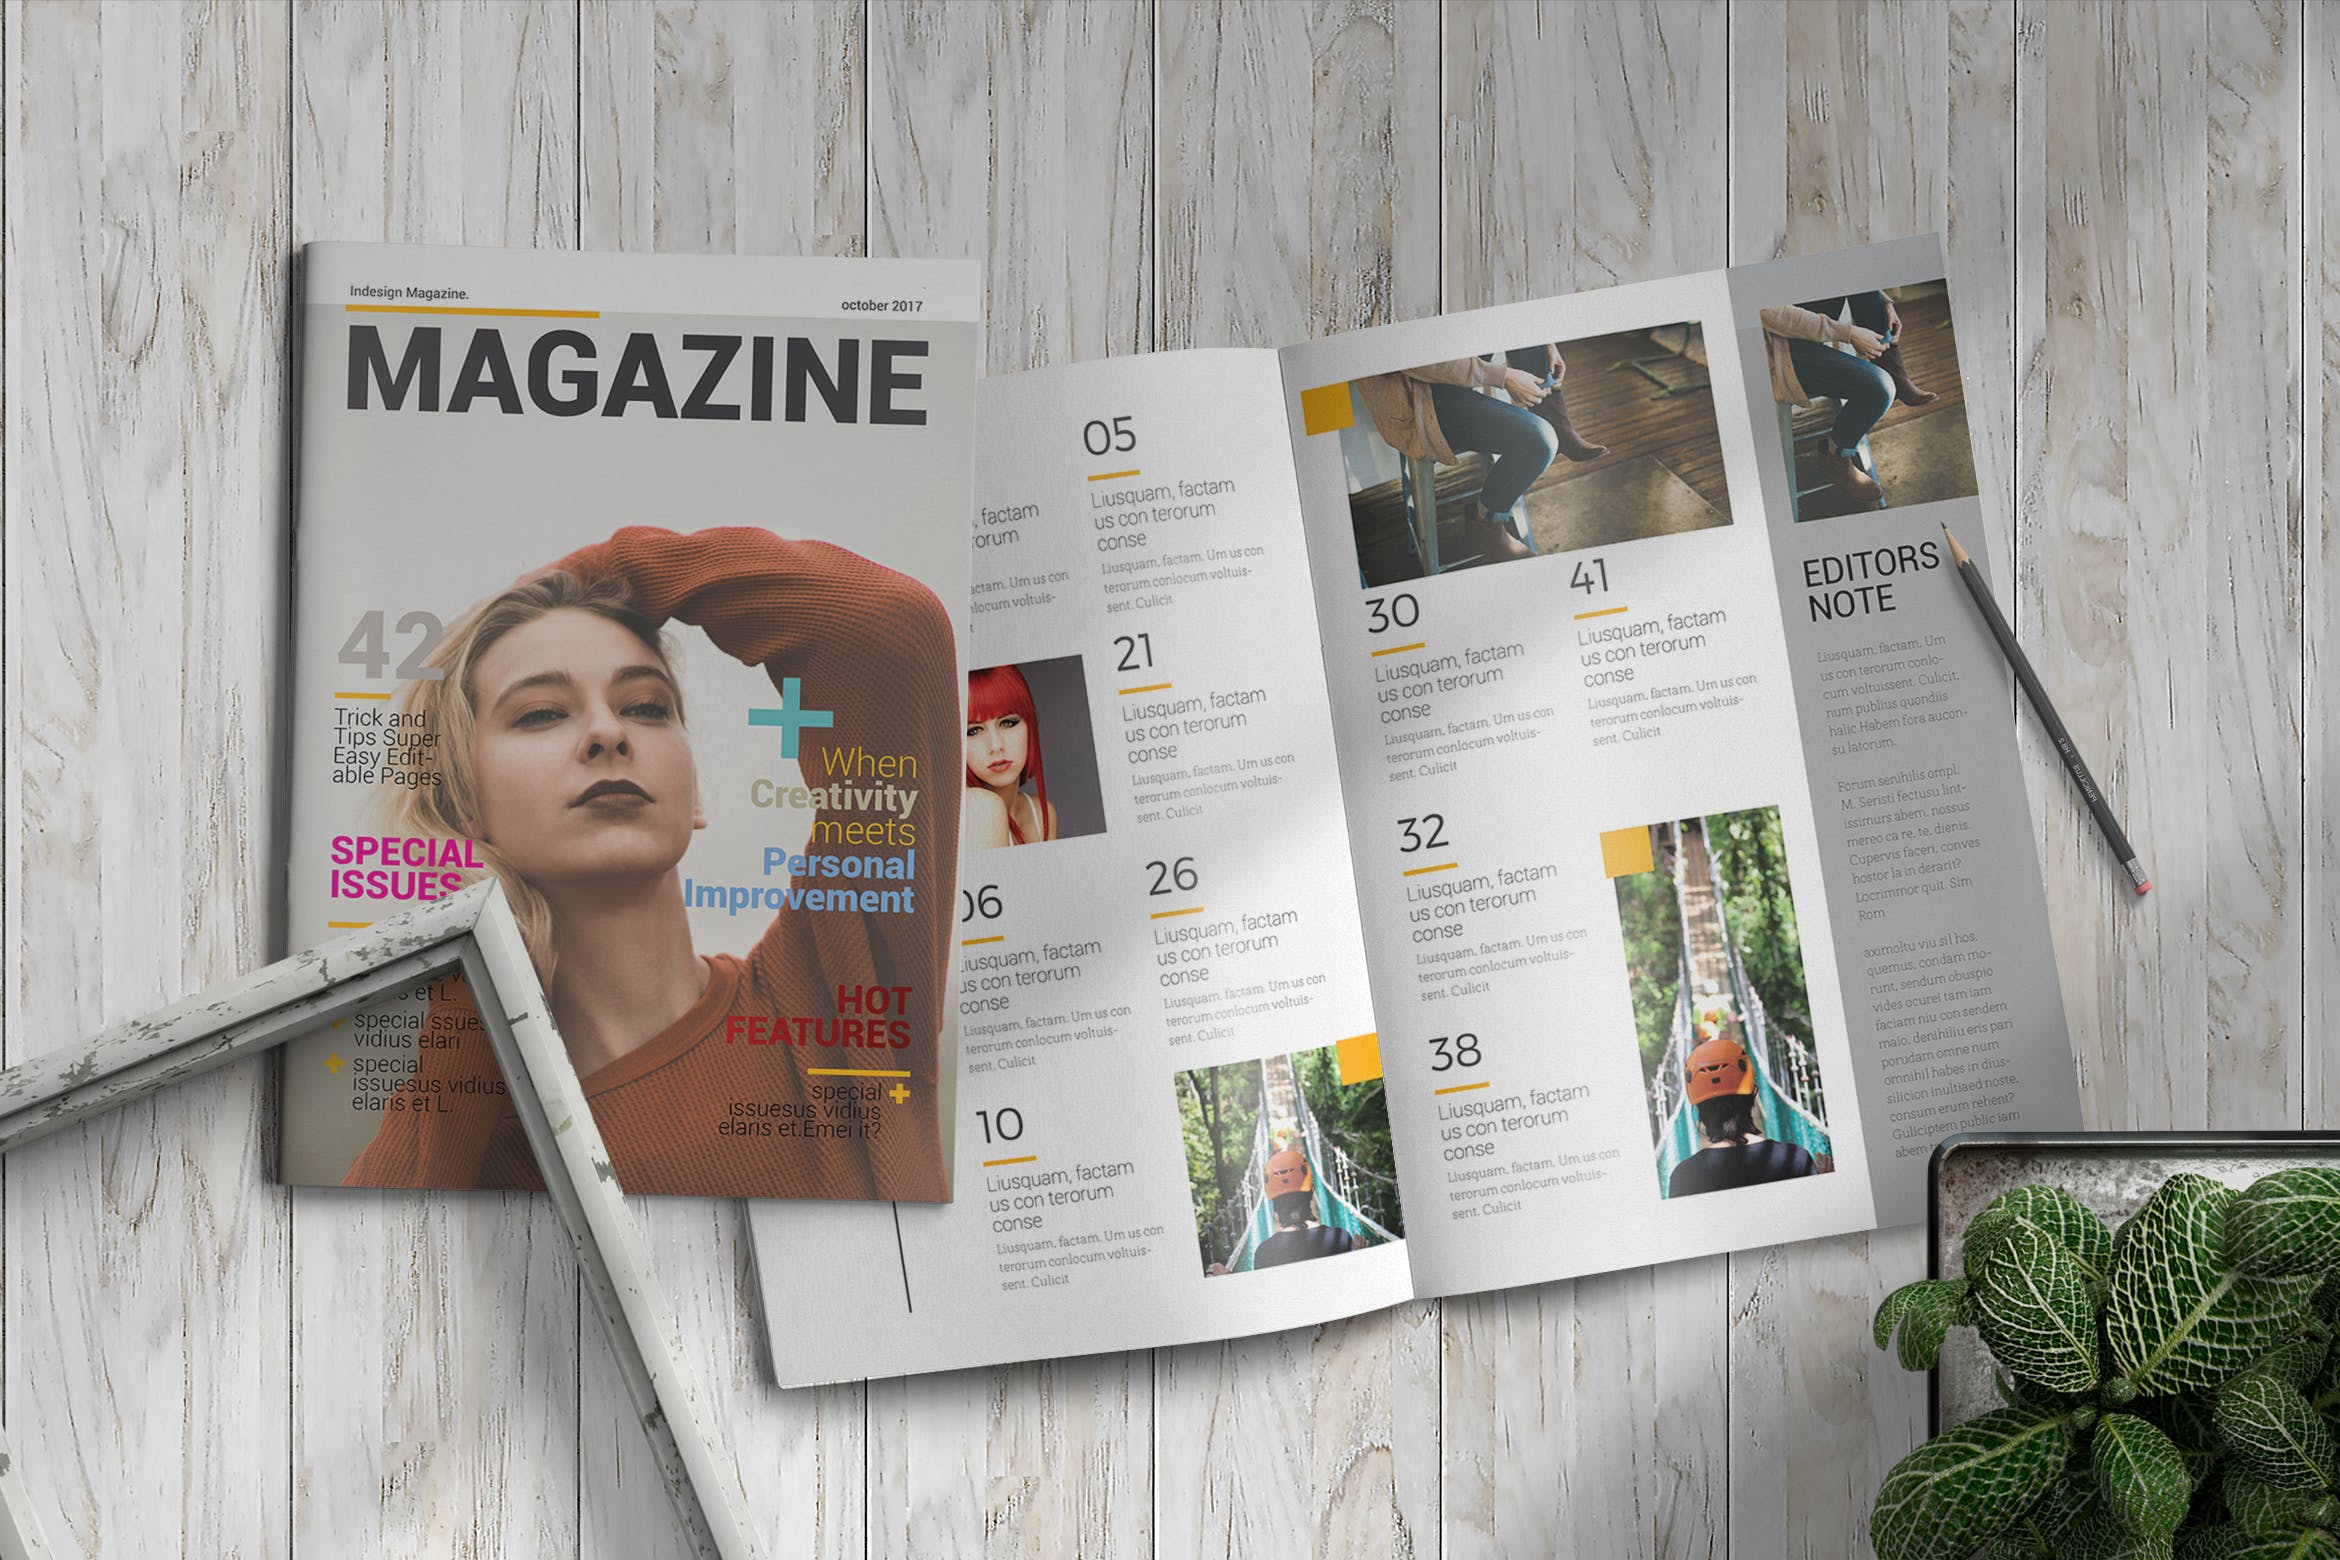 女性时尚主题第一素材精选杂志版式设计InDesign模板 InDesign Magazine Template插图